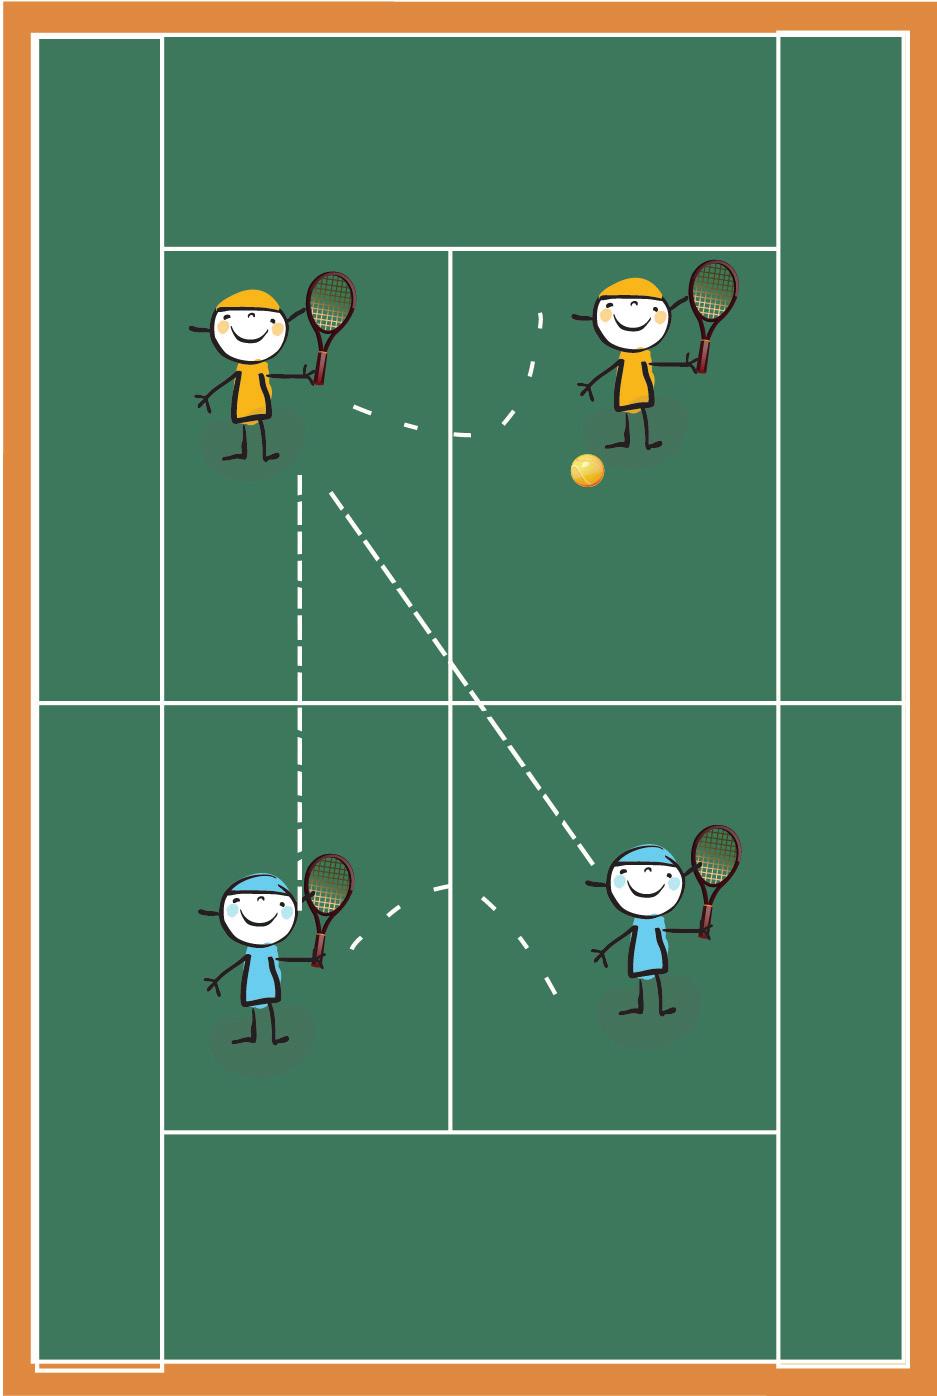 2 X 2 PRINCIPIANTE 02 Jogo de voleio (T, B, TM). 2. Objetivo: Utilização dos fundamentos do tênis para a prática do jogo, somando-se a tomada de decisões e domínio da bola. 3.